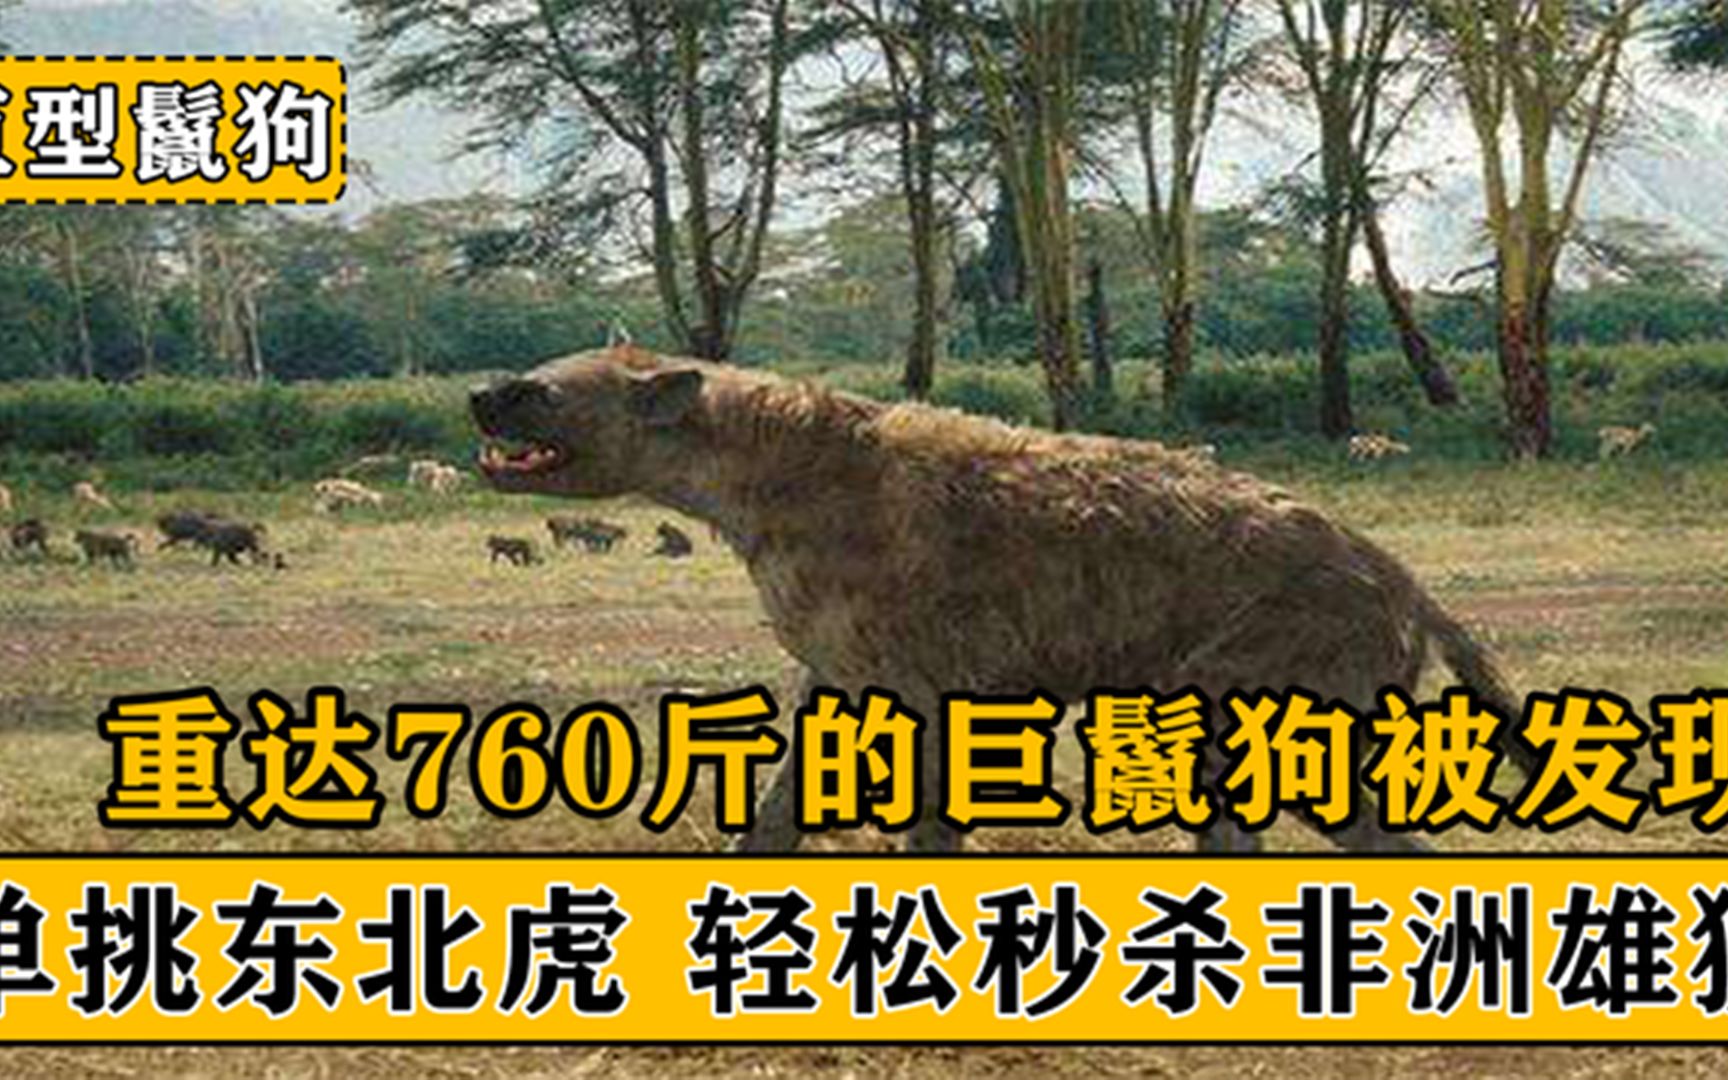 760斤重的巨鬣狗被发现，单挑老虎秒杀雄狮，它才是终极猎杀者？